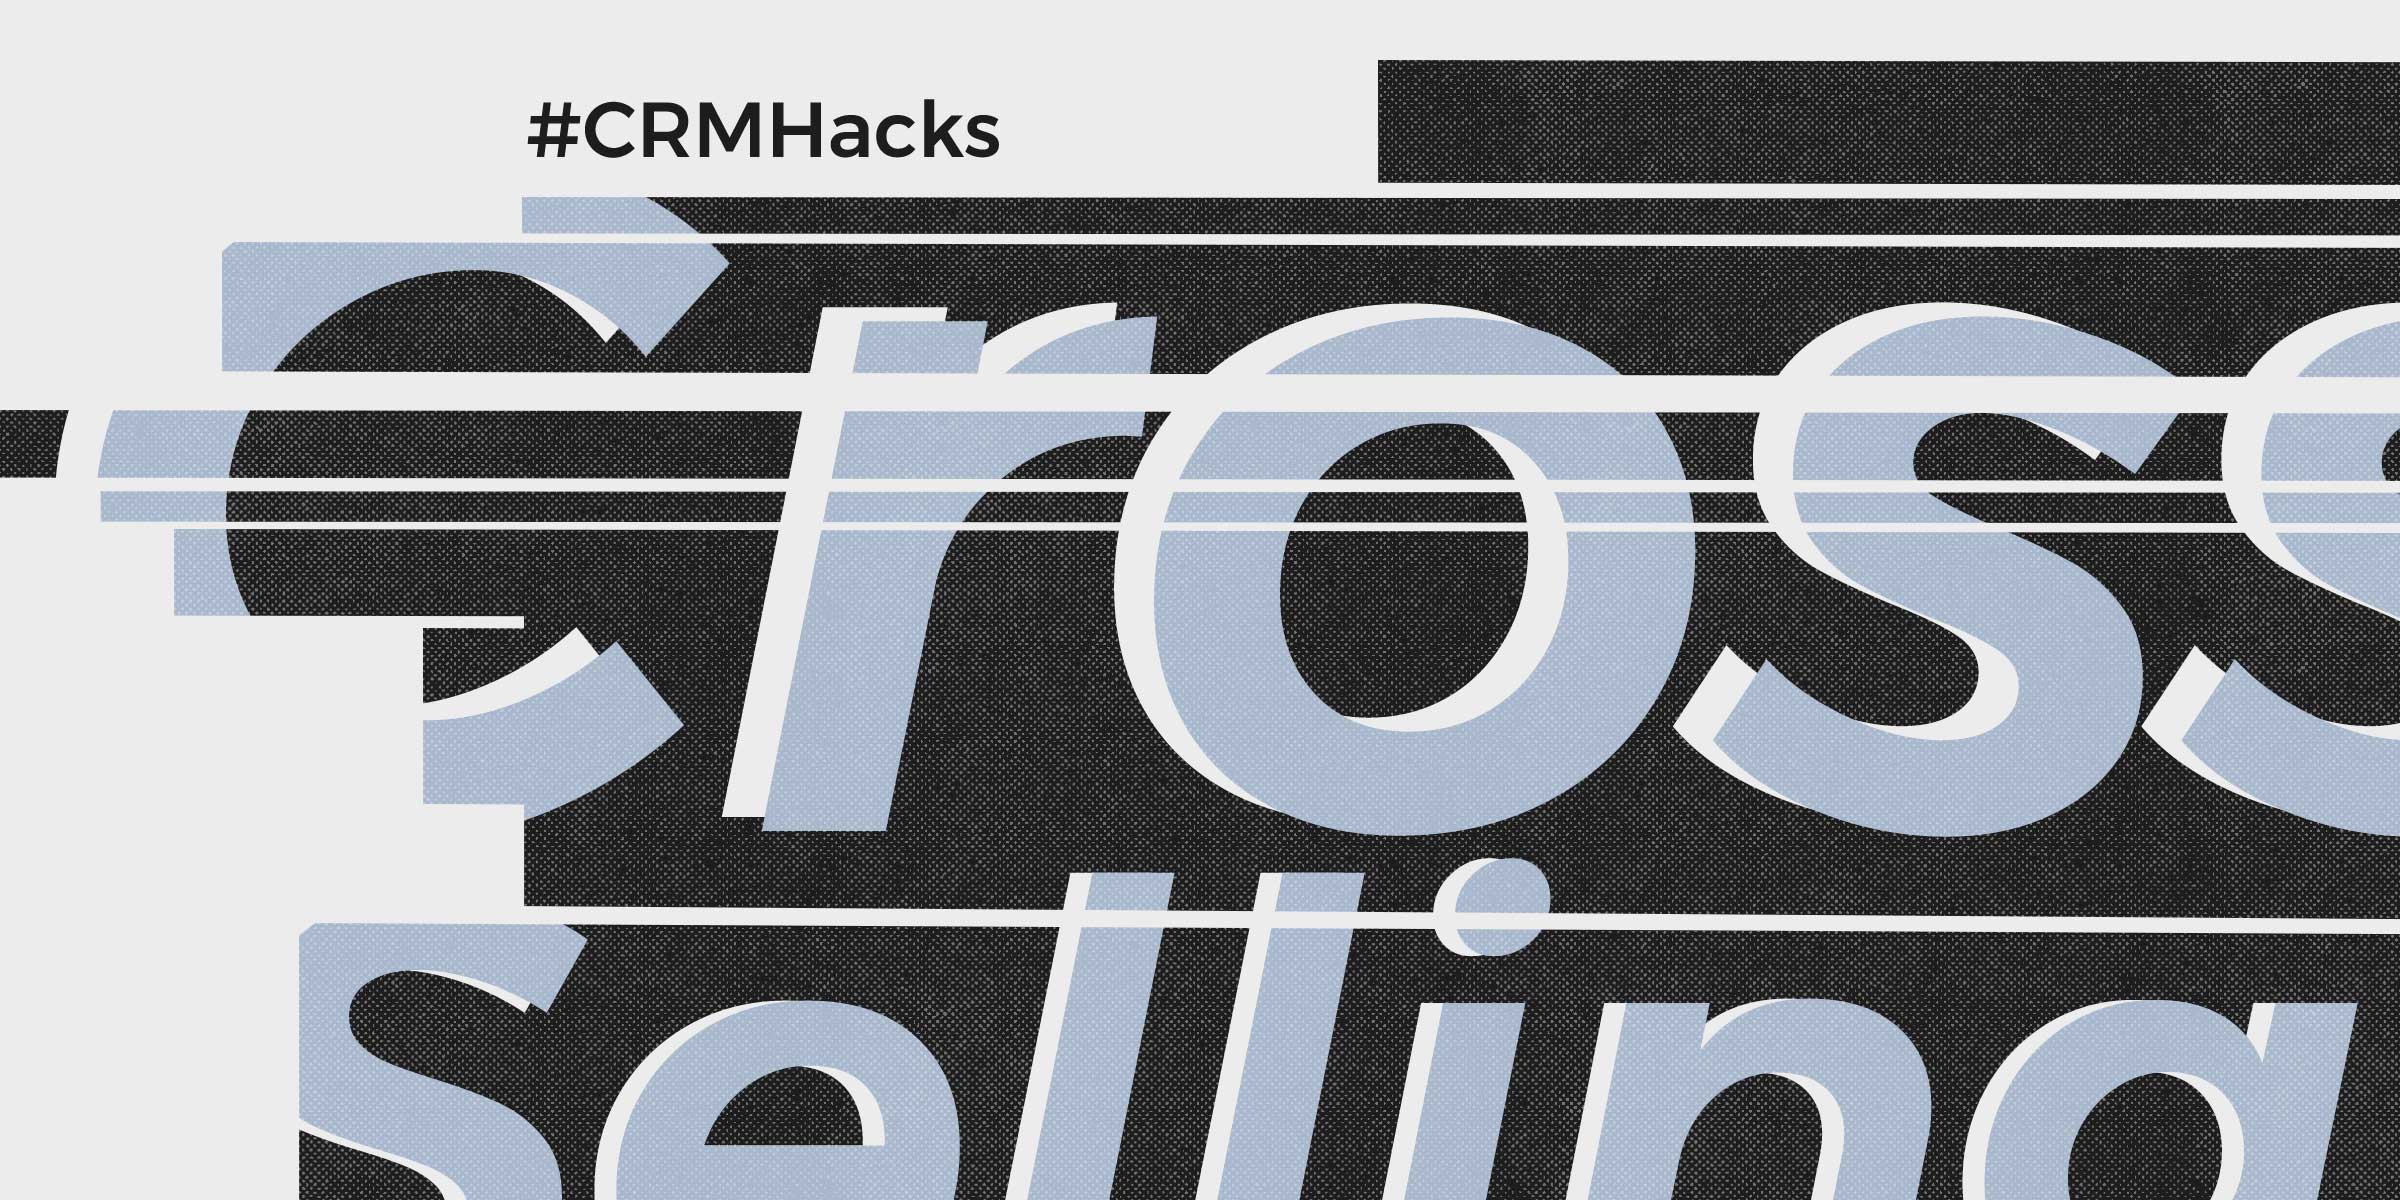 CRM Hack: Cross-Selling Between Platforms